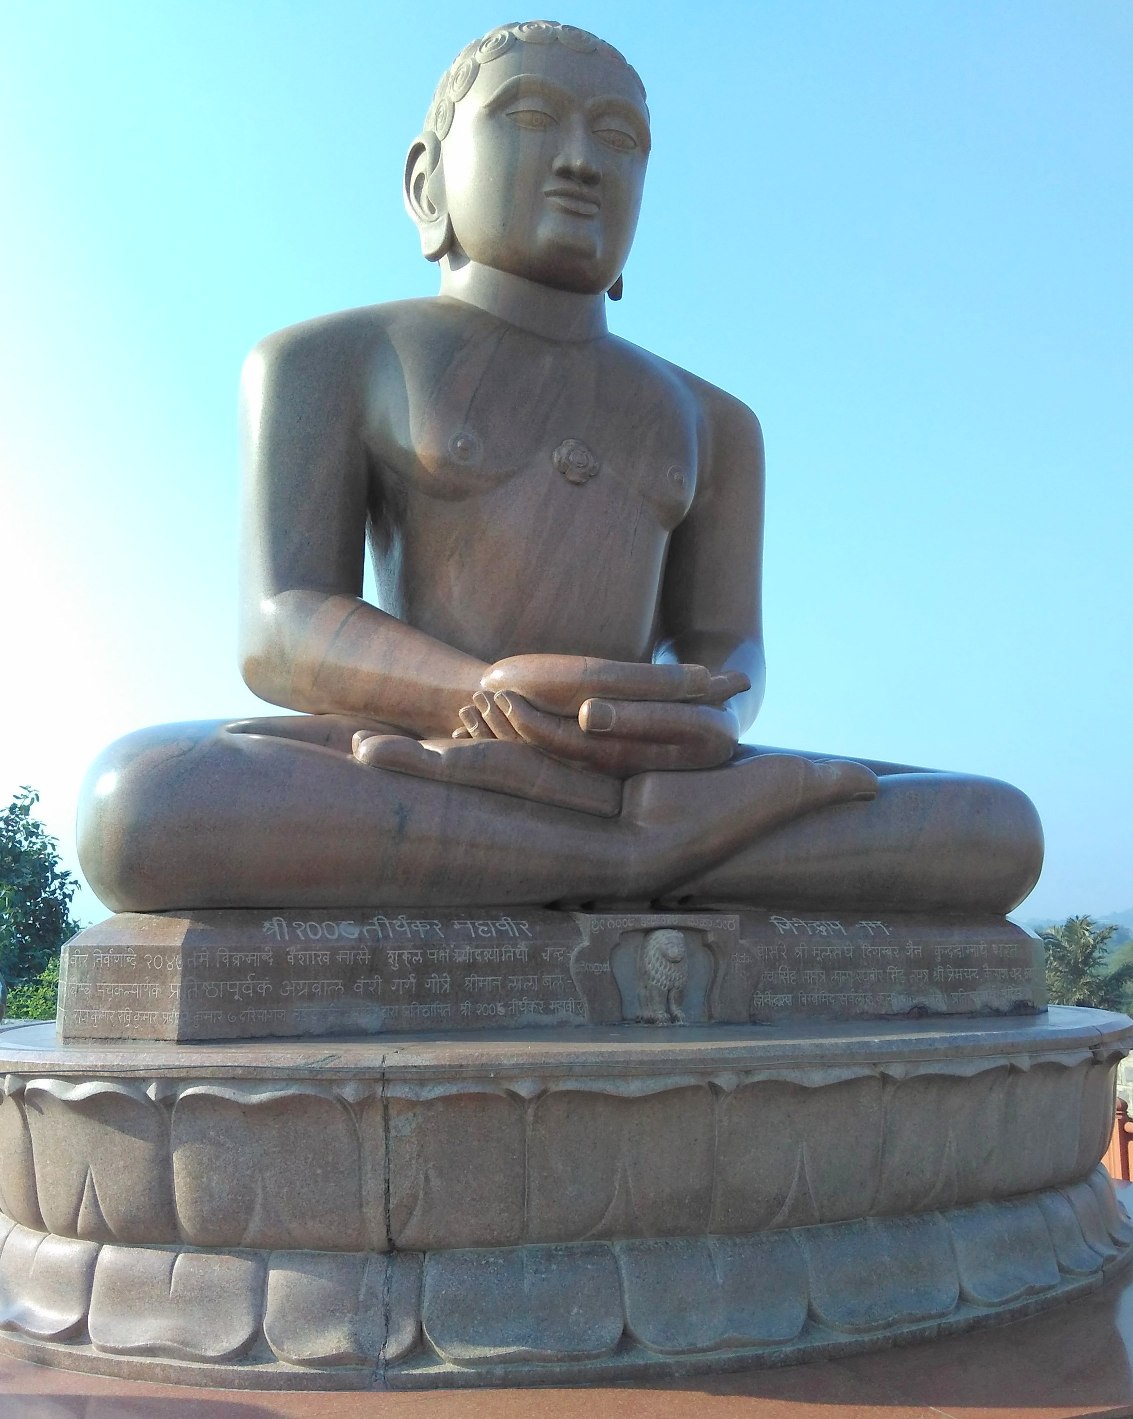 भगवान महावीर के द्वारा बनाए धर्म को ‘जैन धर्म’ क्यों कहा जाता है- तरुण शर्मा